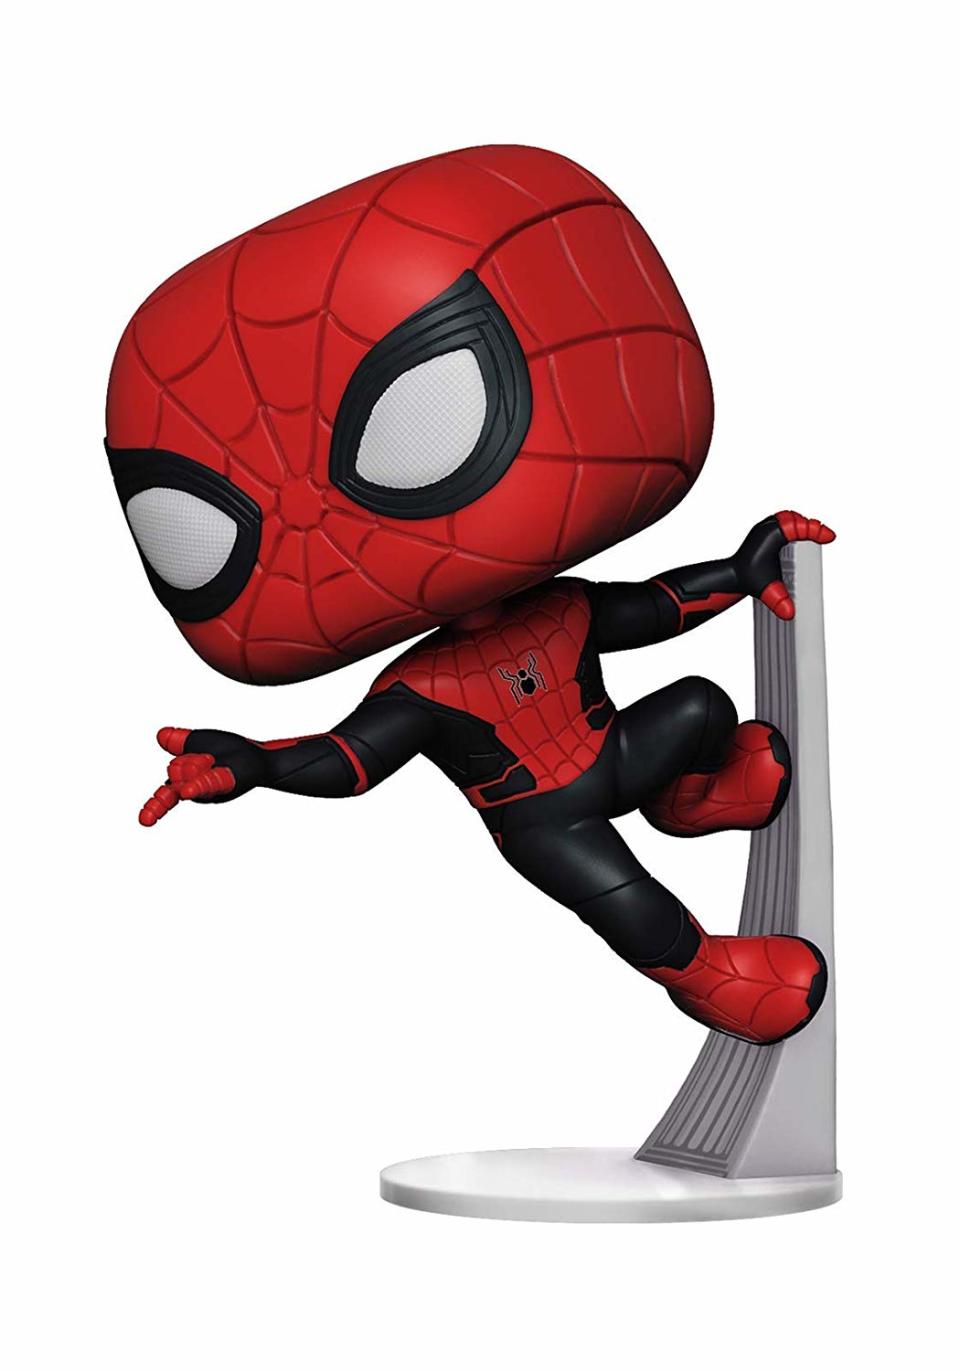 Spider-Man Pop! (Photo: Funko)